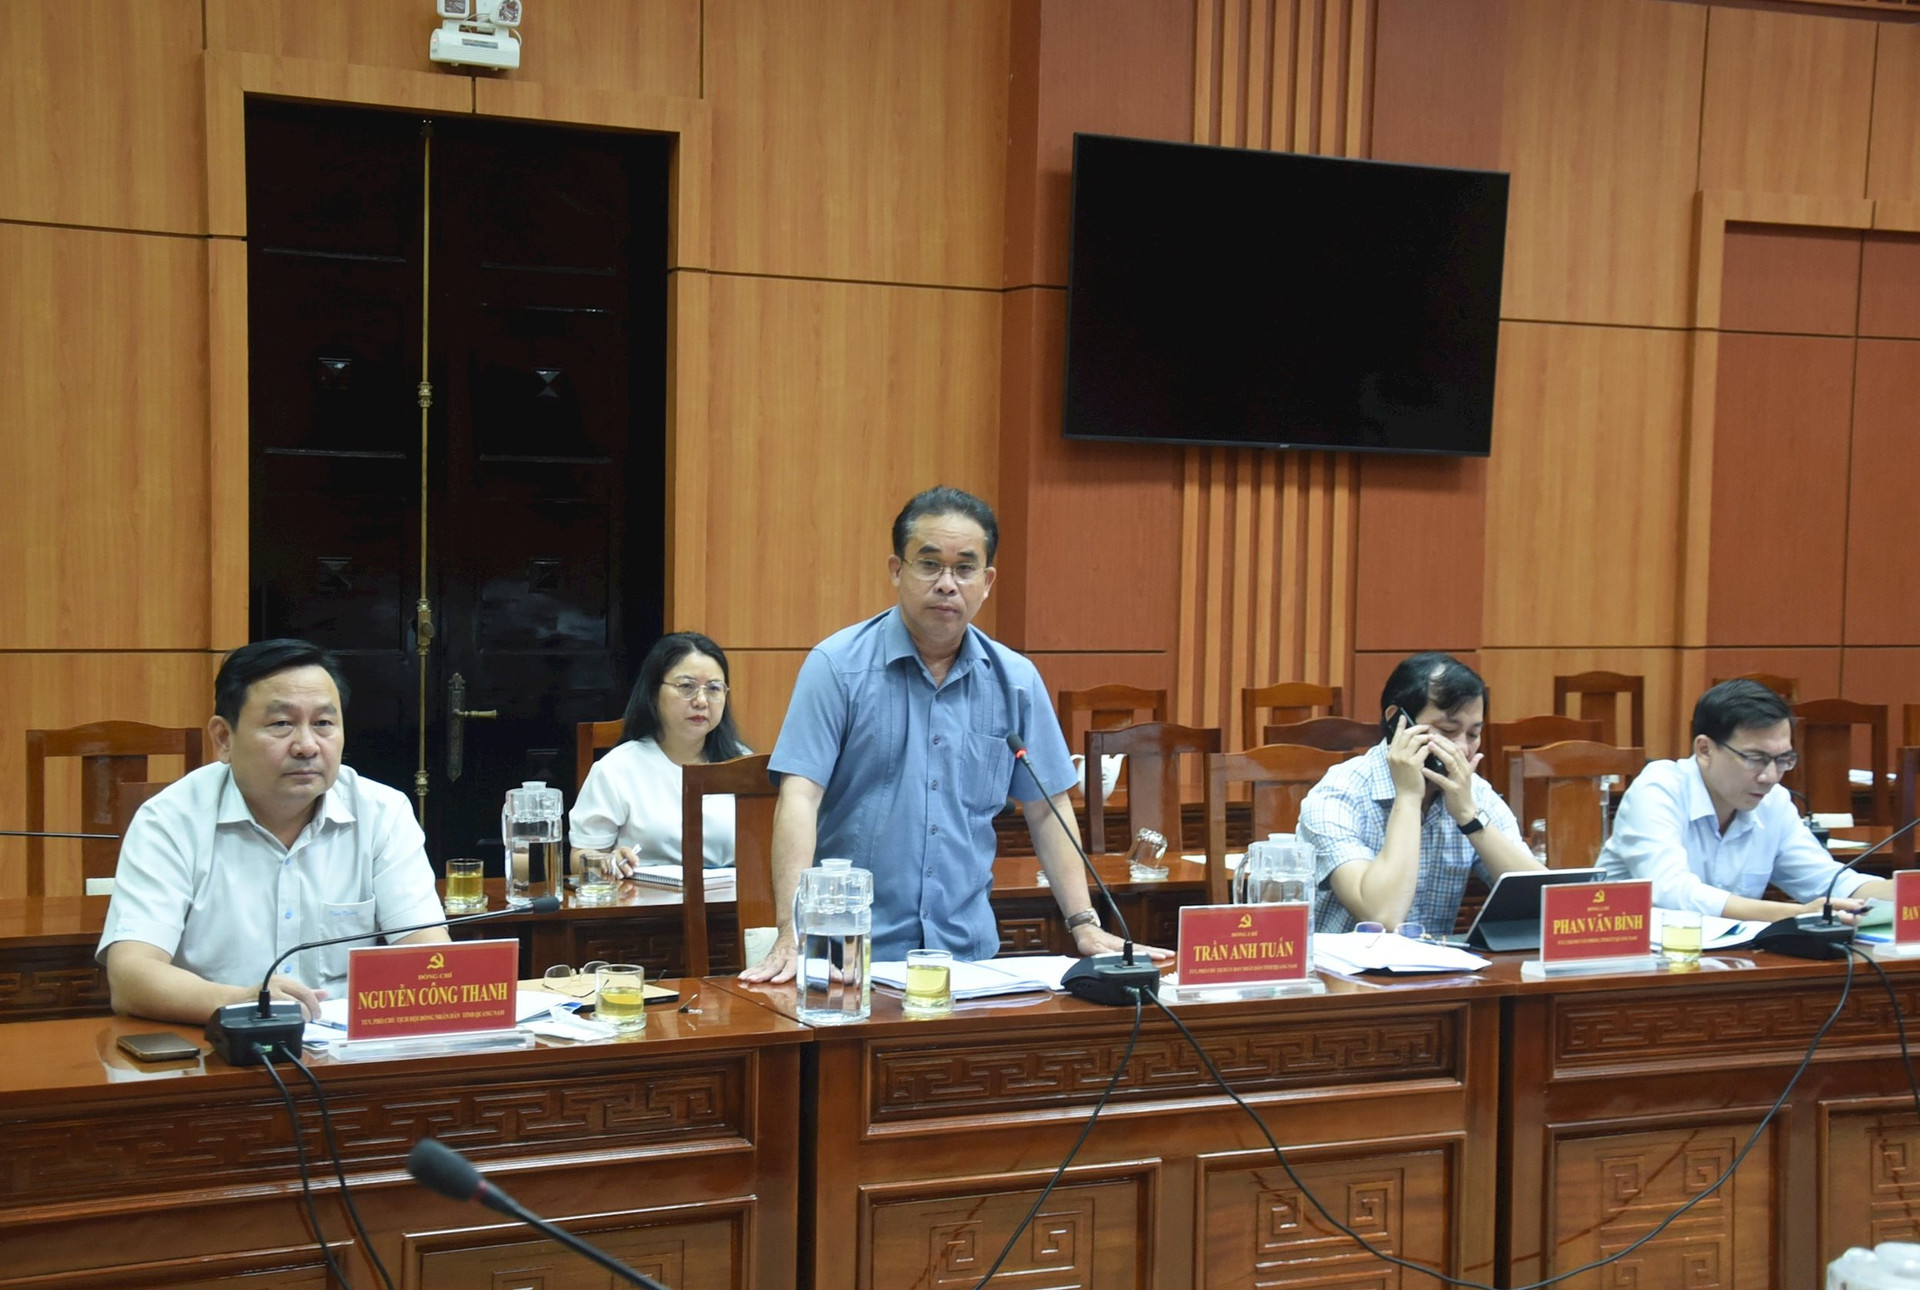 Phó Chủ tịch UBND tỉnh Trần Anh Tuấn phát biểu tại buổi làm việc, nhấn mạnh Sở GD-ĐT tăng cường công tác tham mưu cho tỉnh. Ảnh: X.P